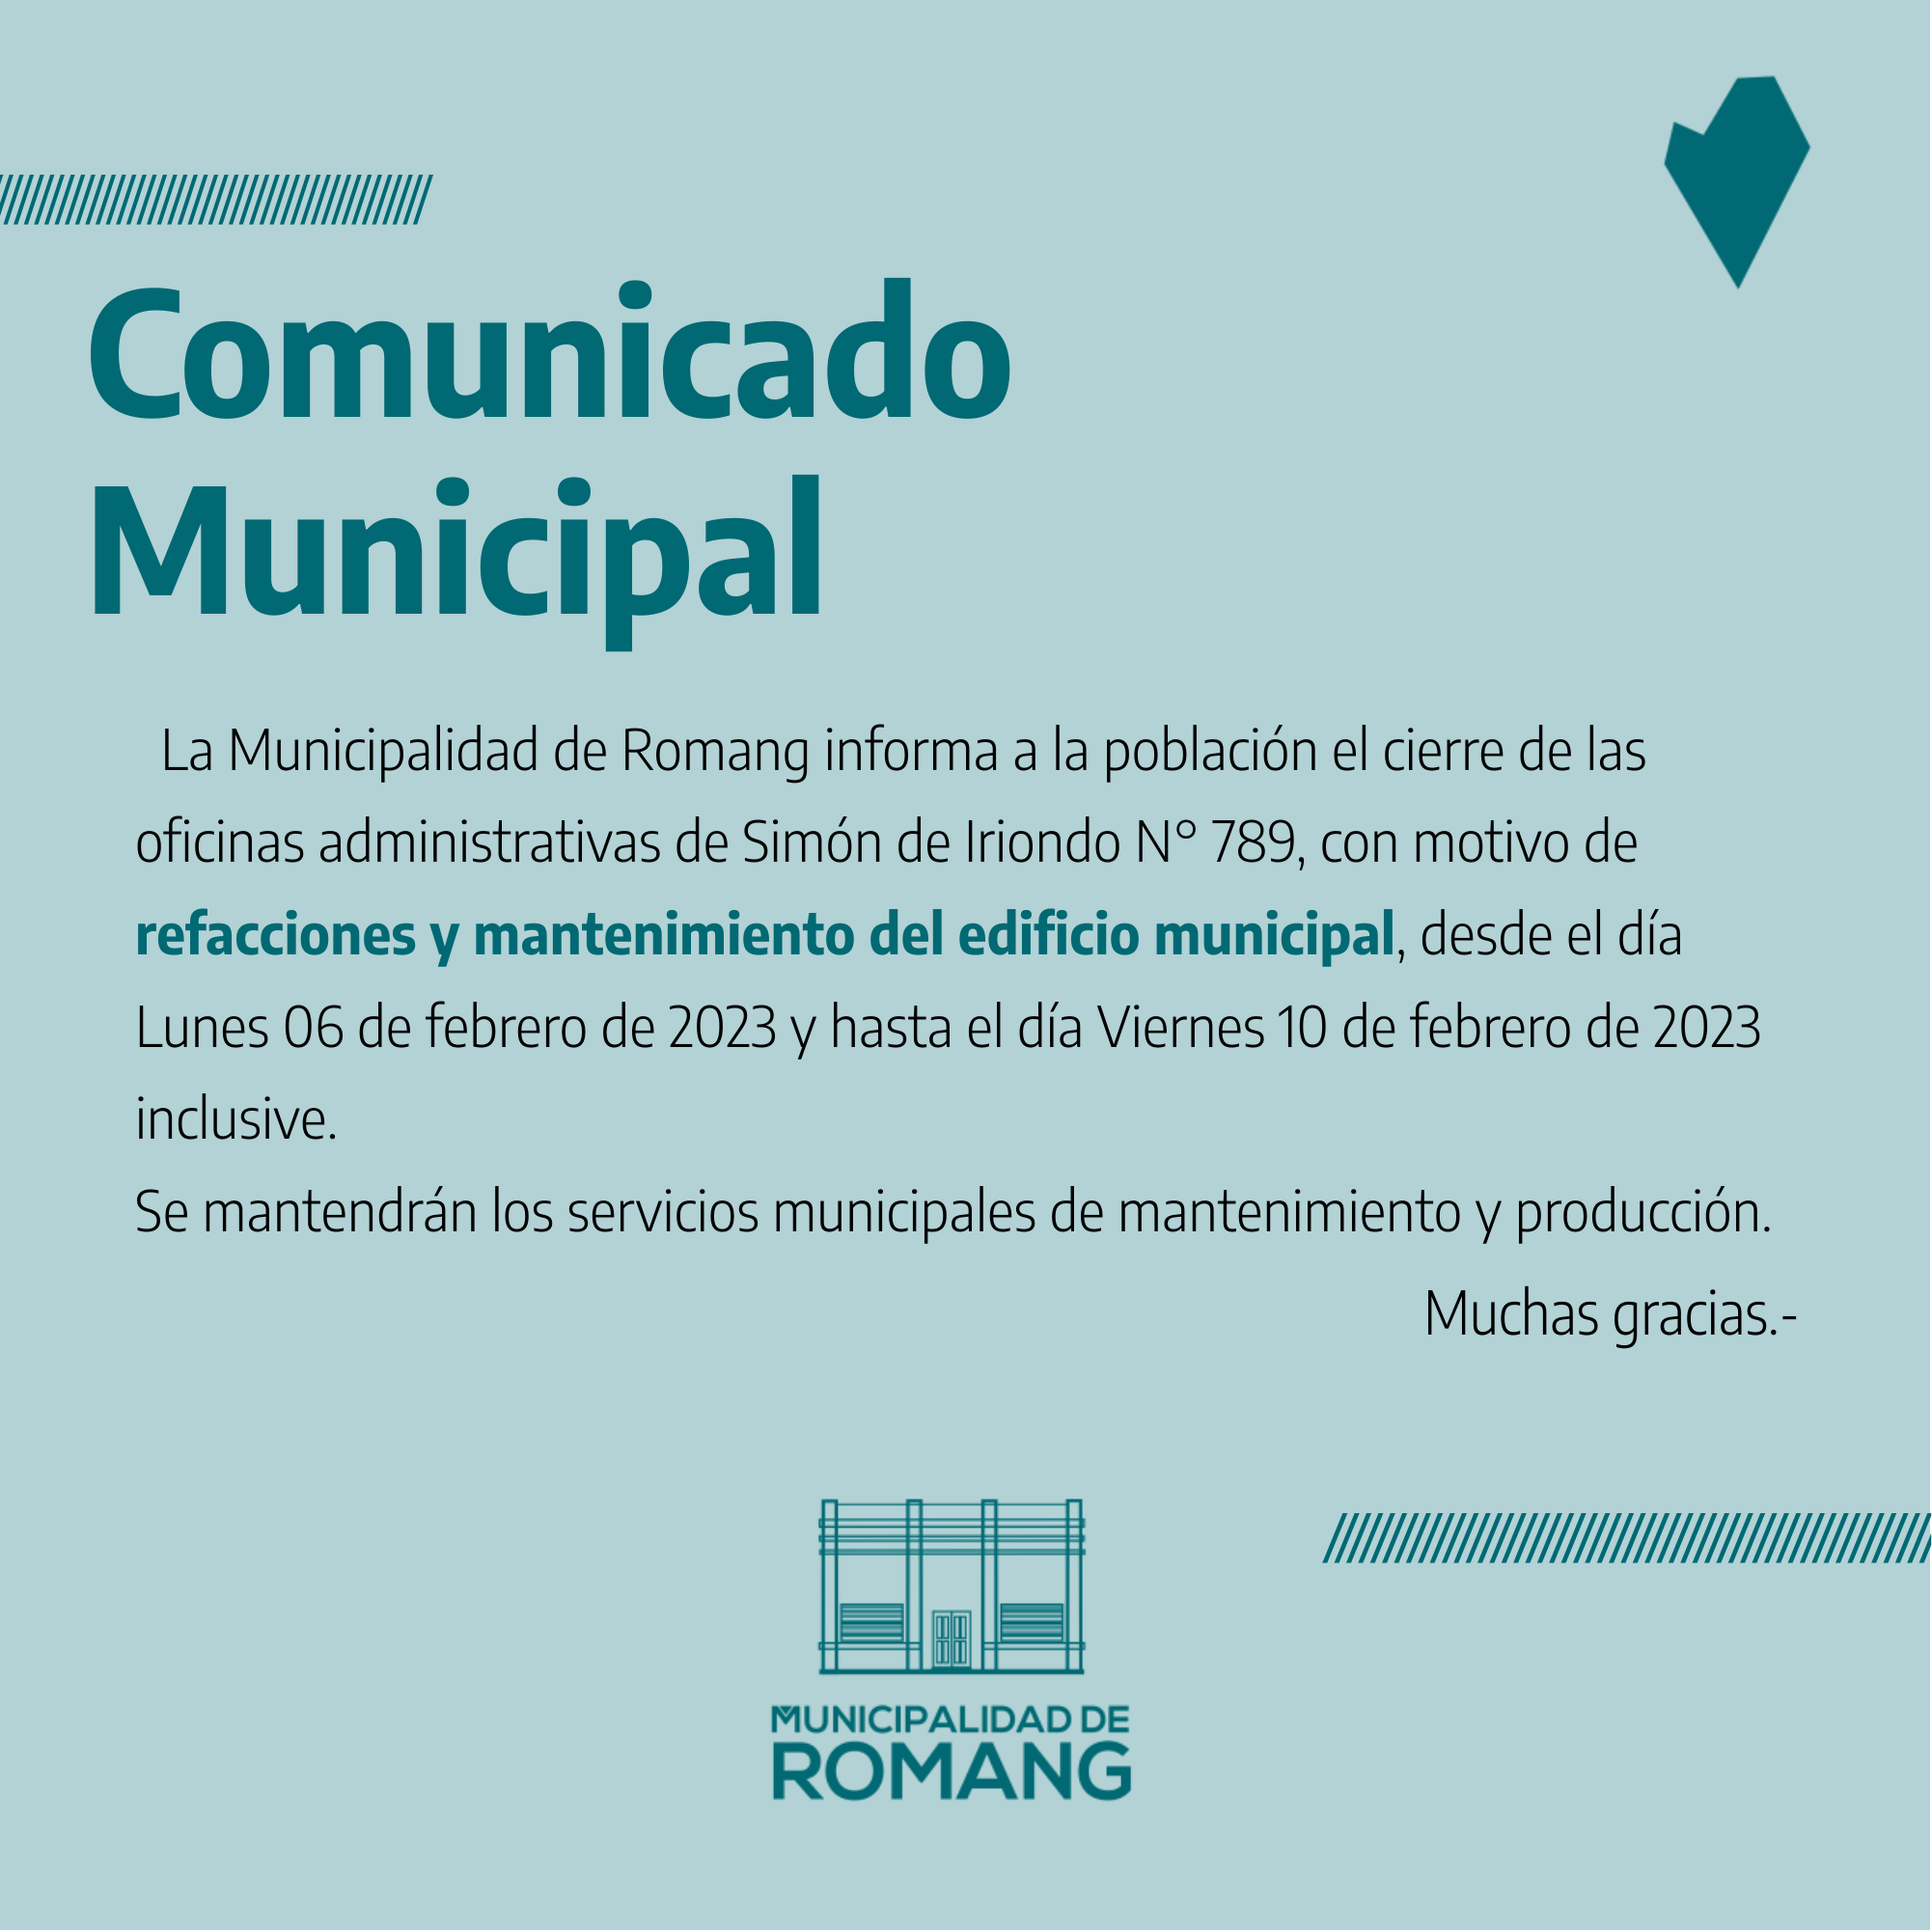 Romang: Comunicado Municipal